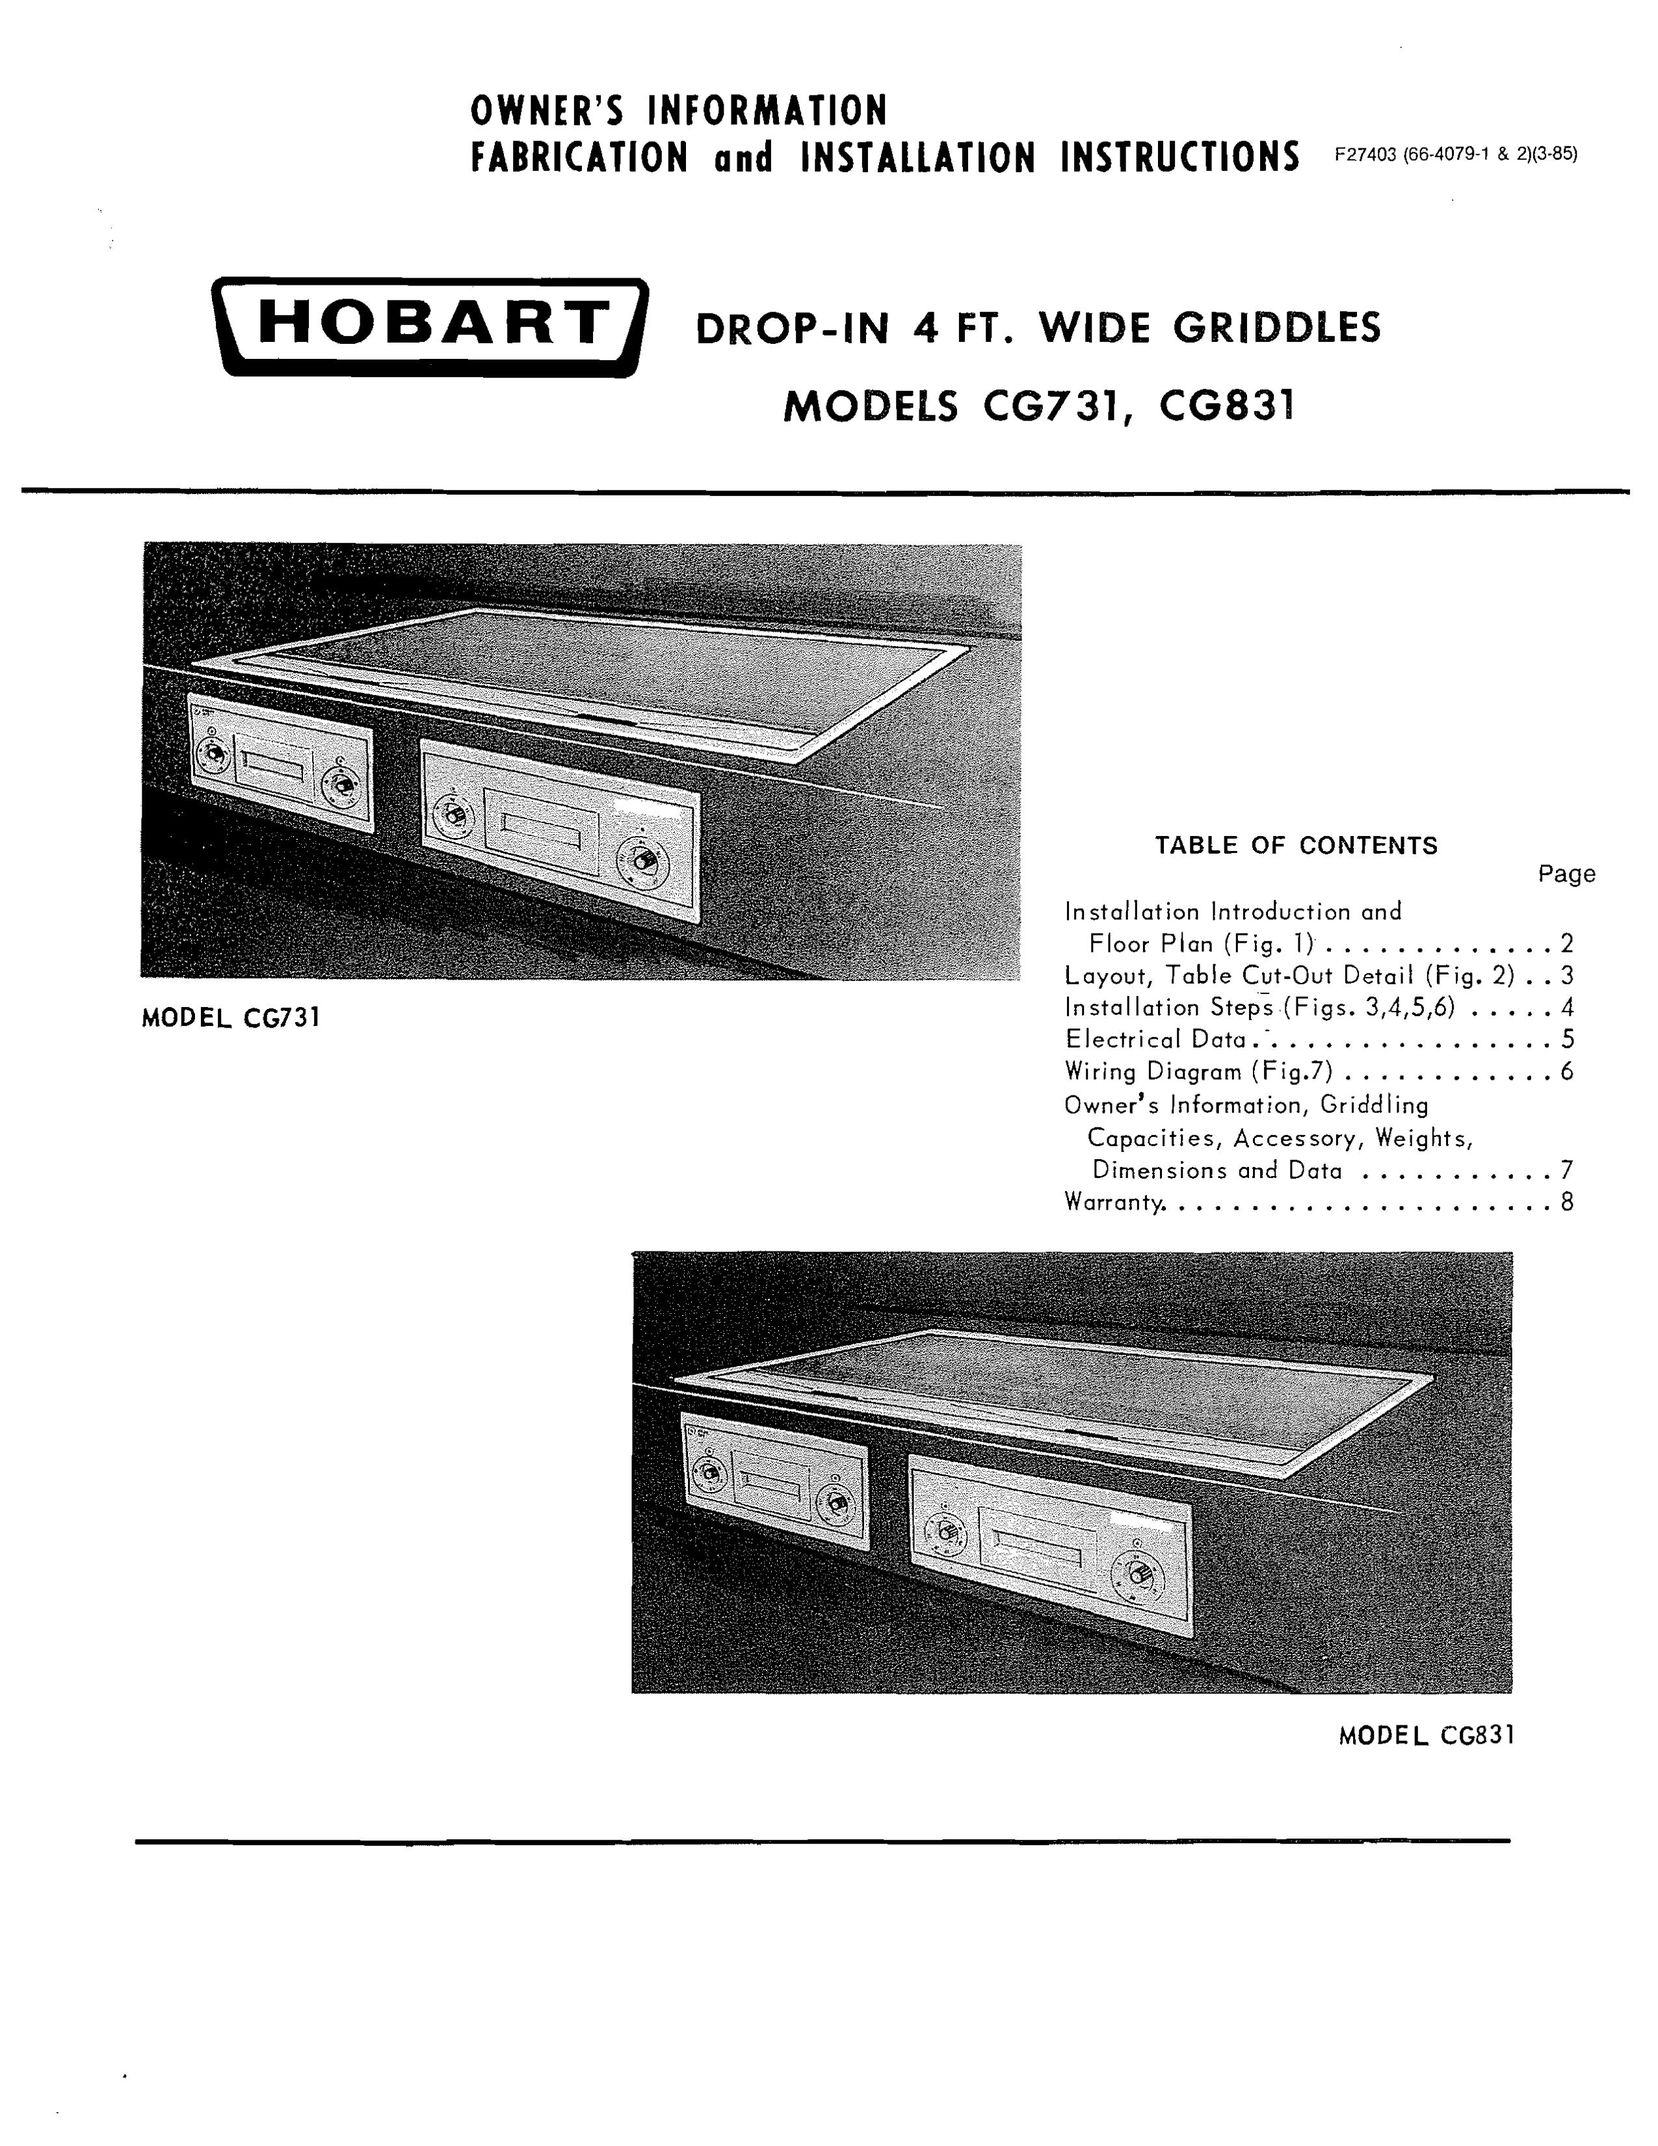 Hobart CG731 Sander User Manual